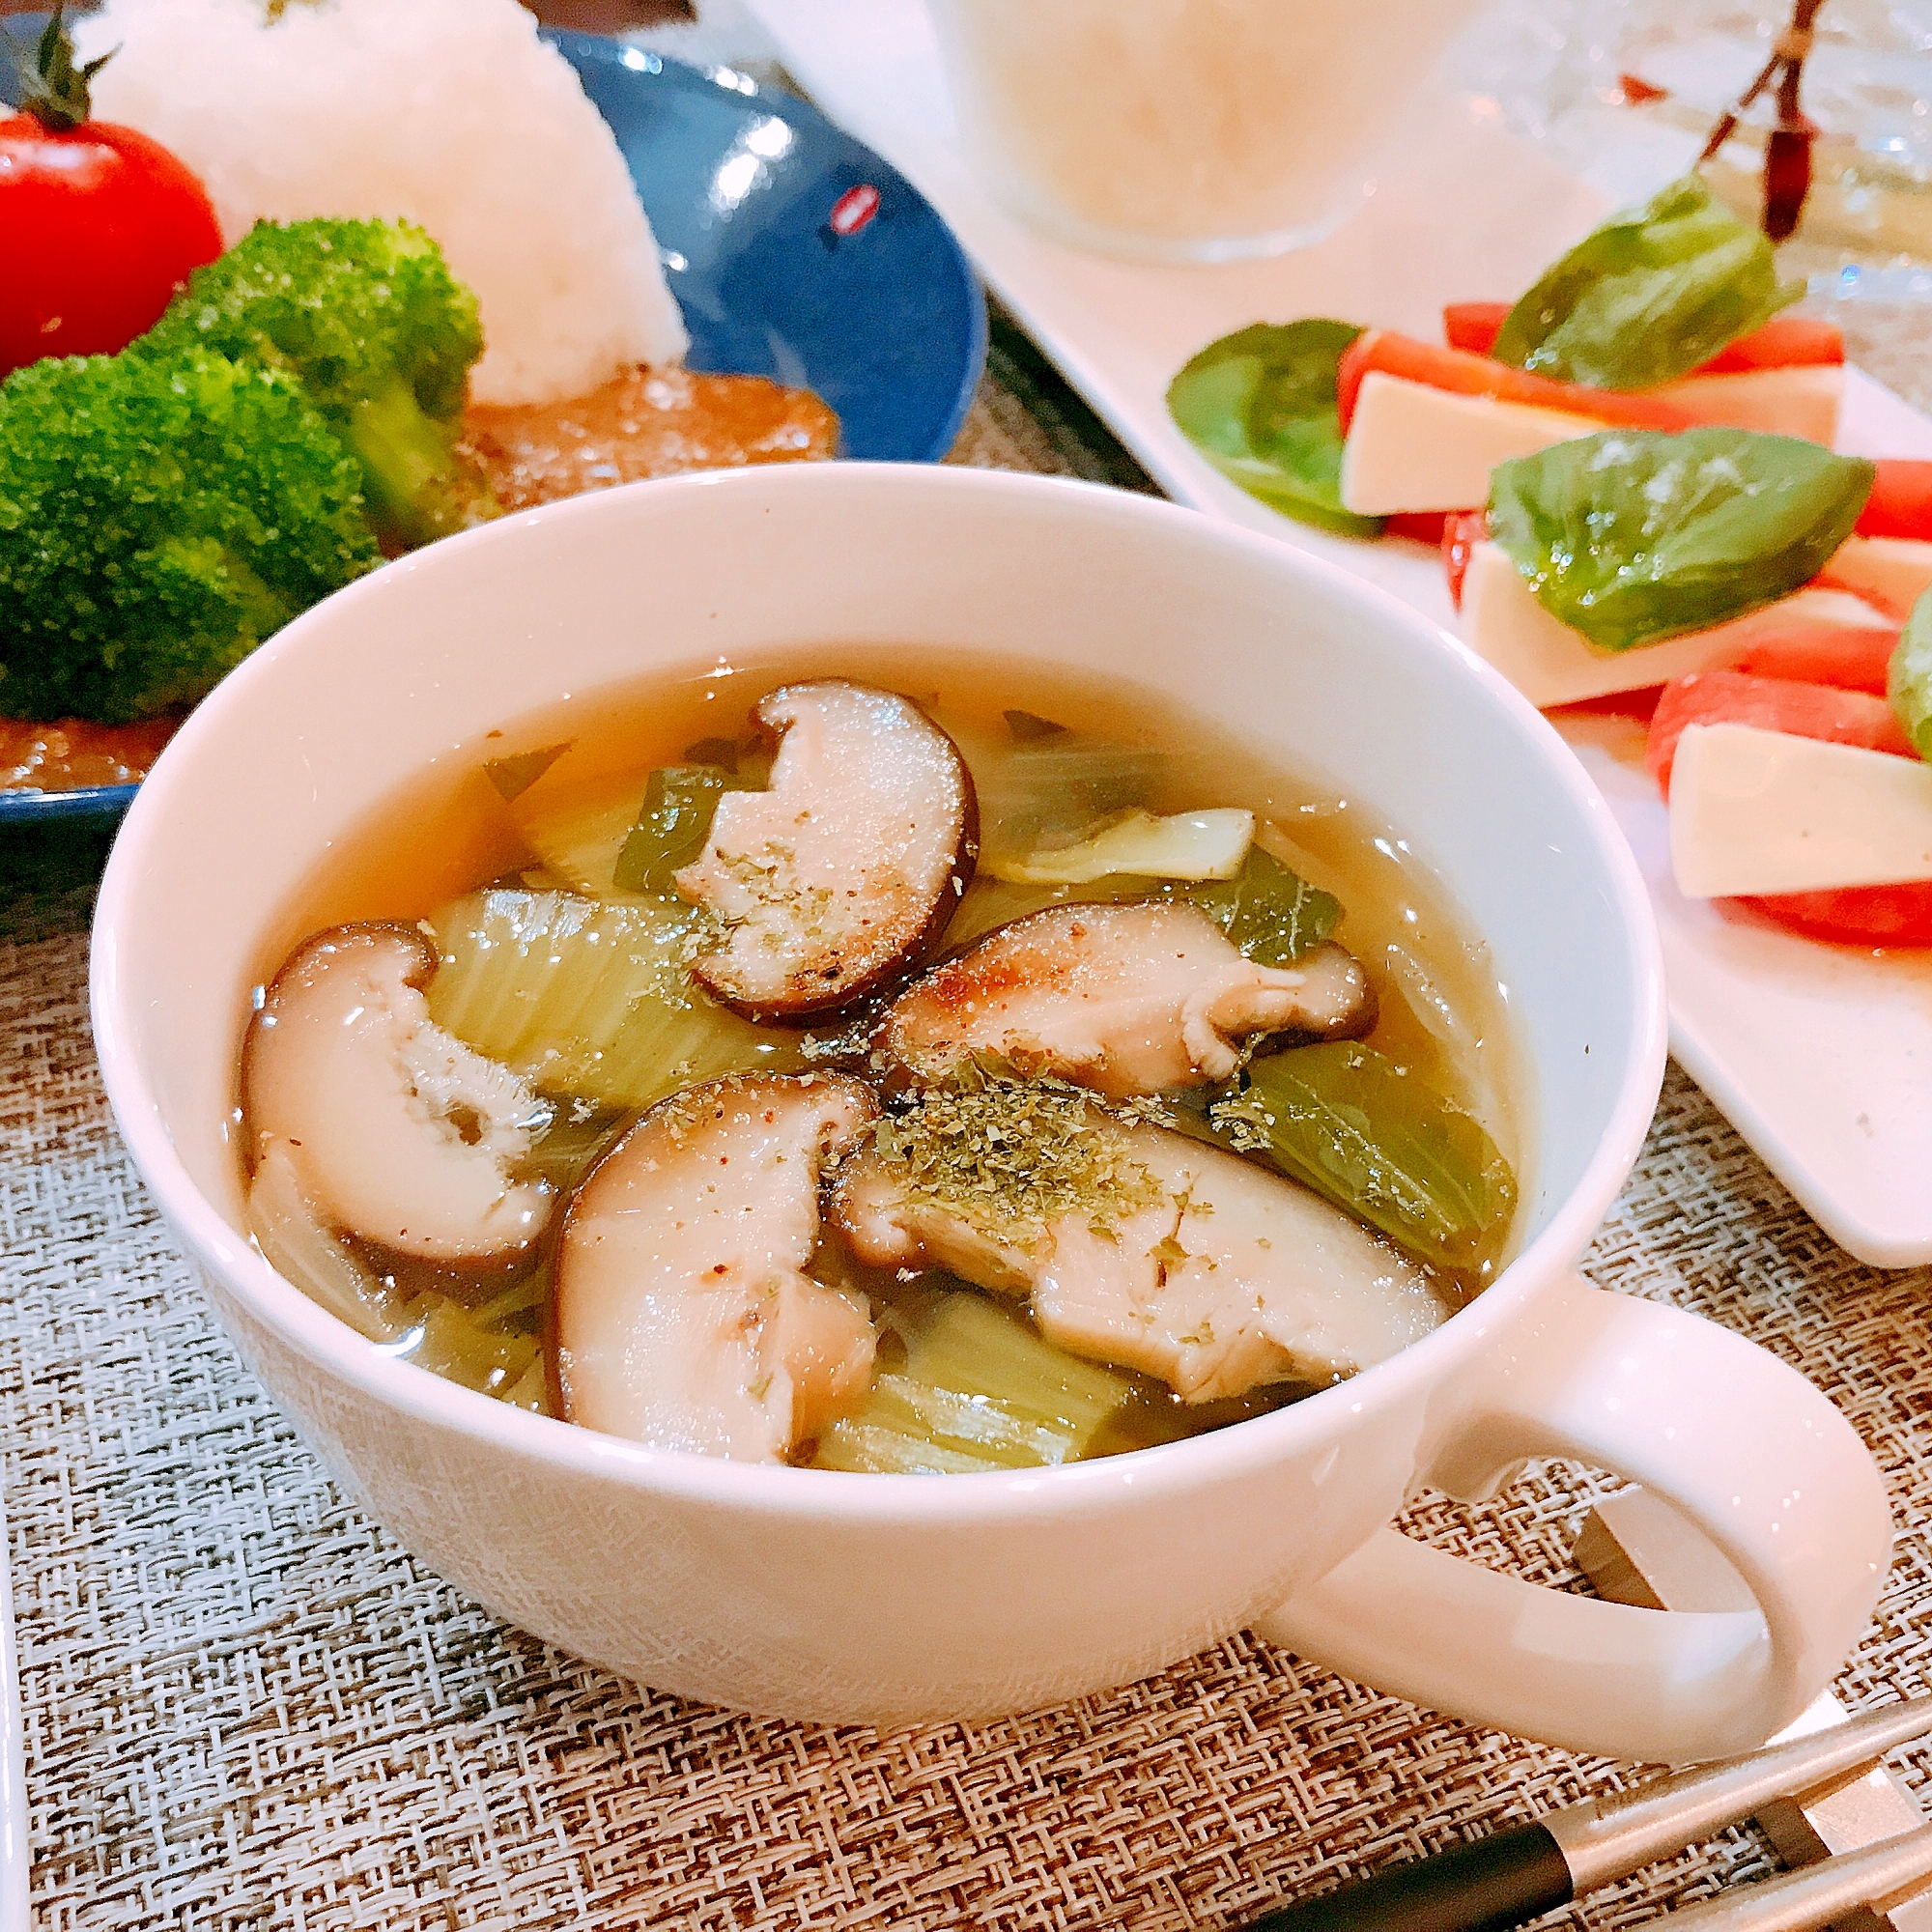 チンゲン菜と椎茸のスープ